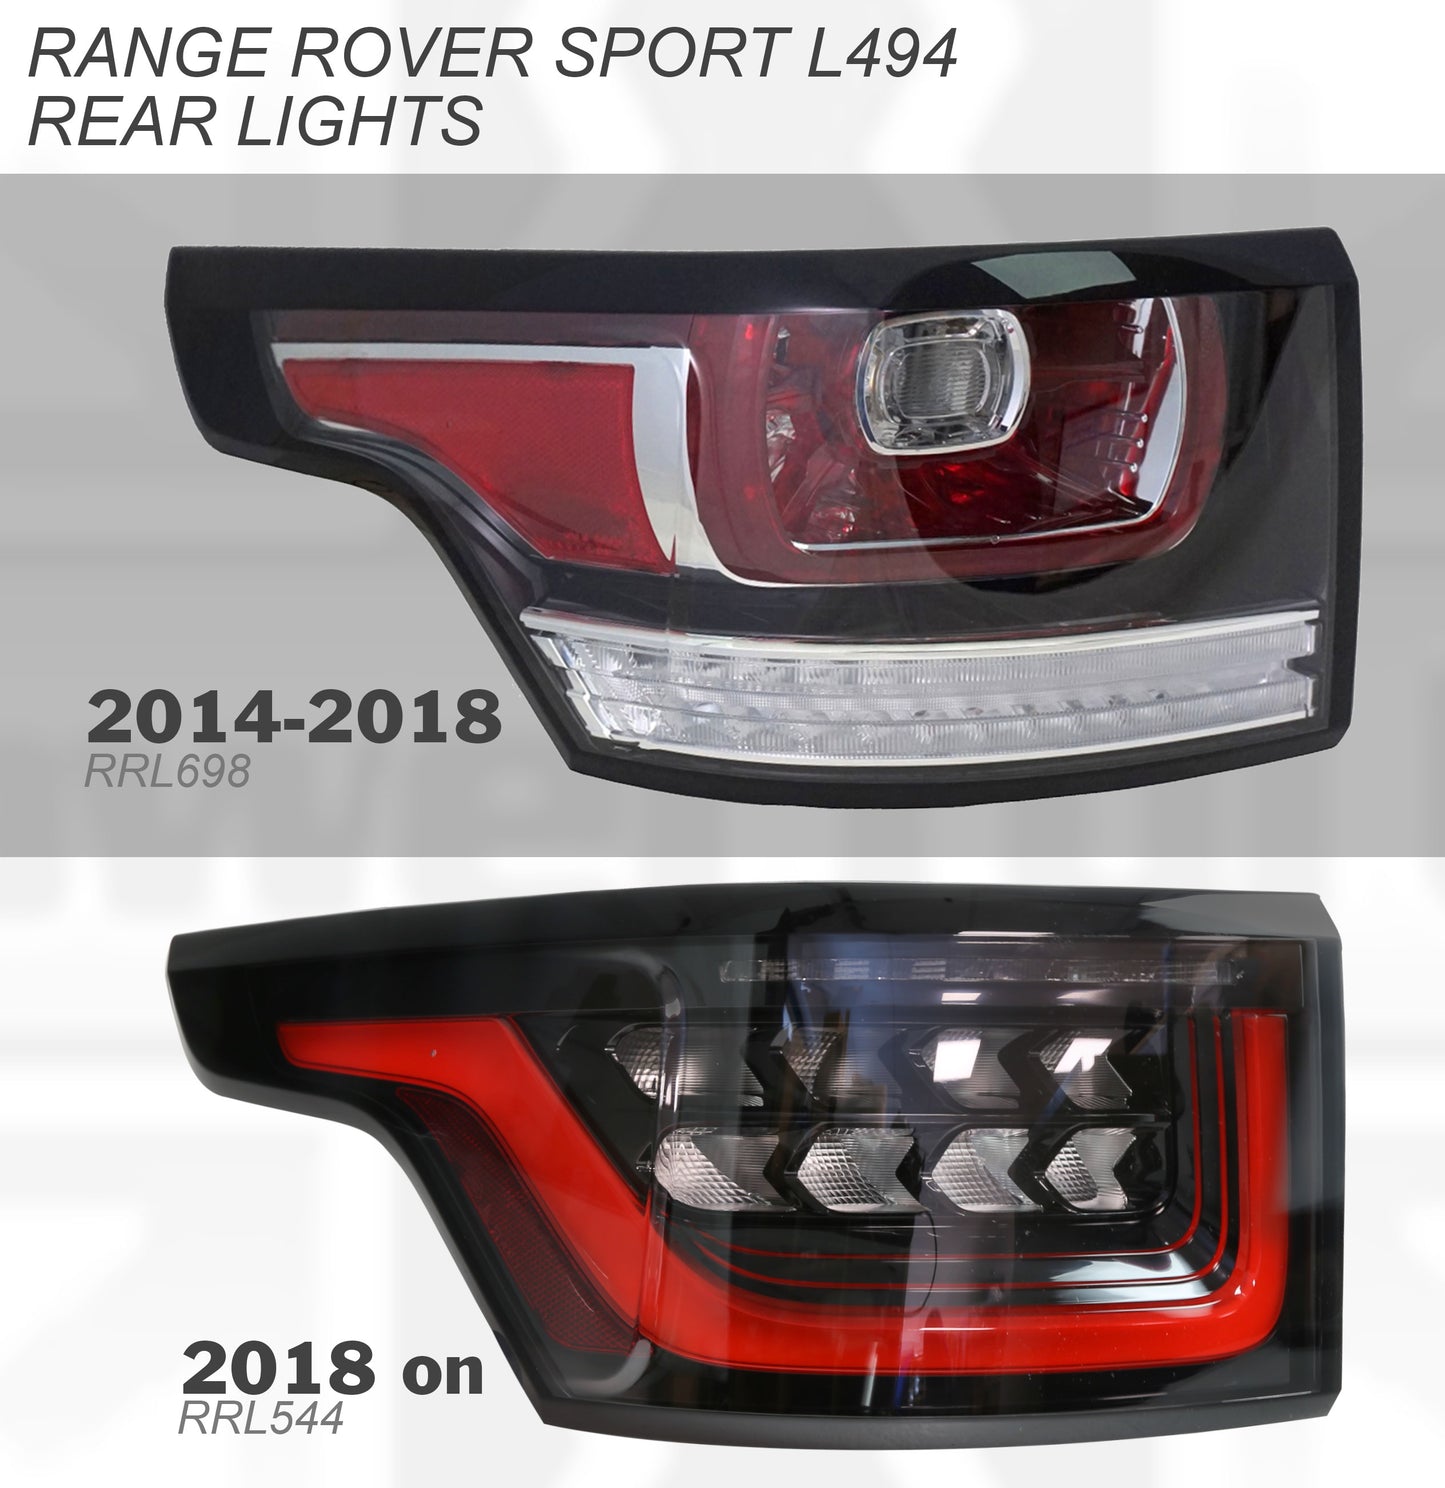 2018 Facelift Rear Light  for Range Rover Sport L494 2018+ - ROW Spec - LEFT LH (Genuine)